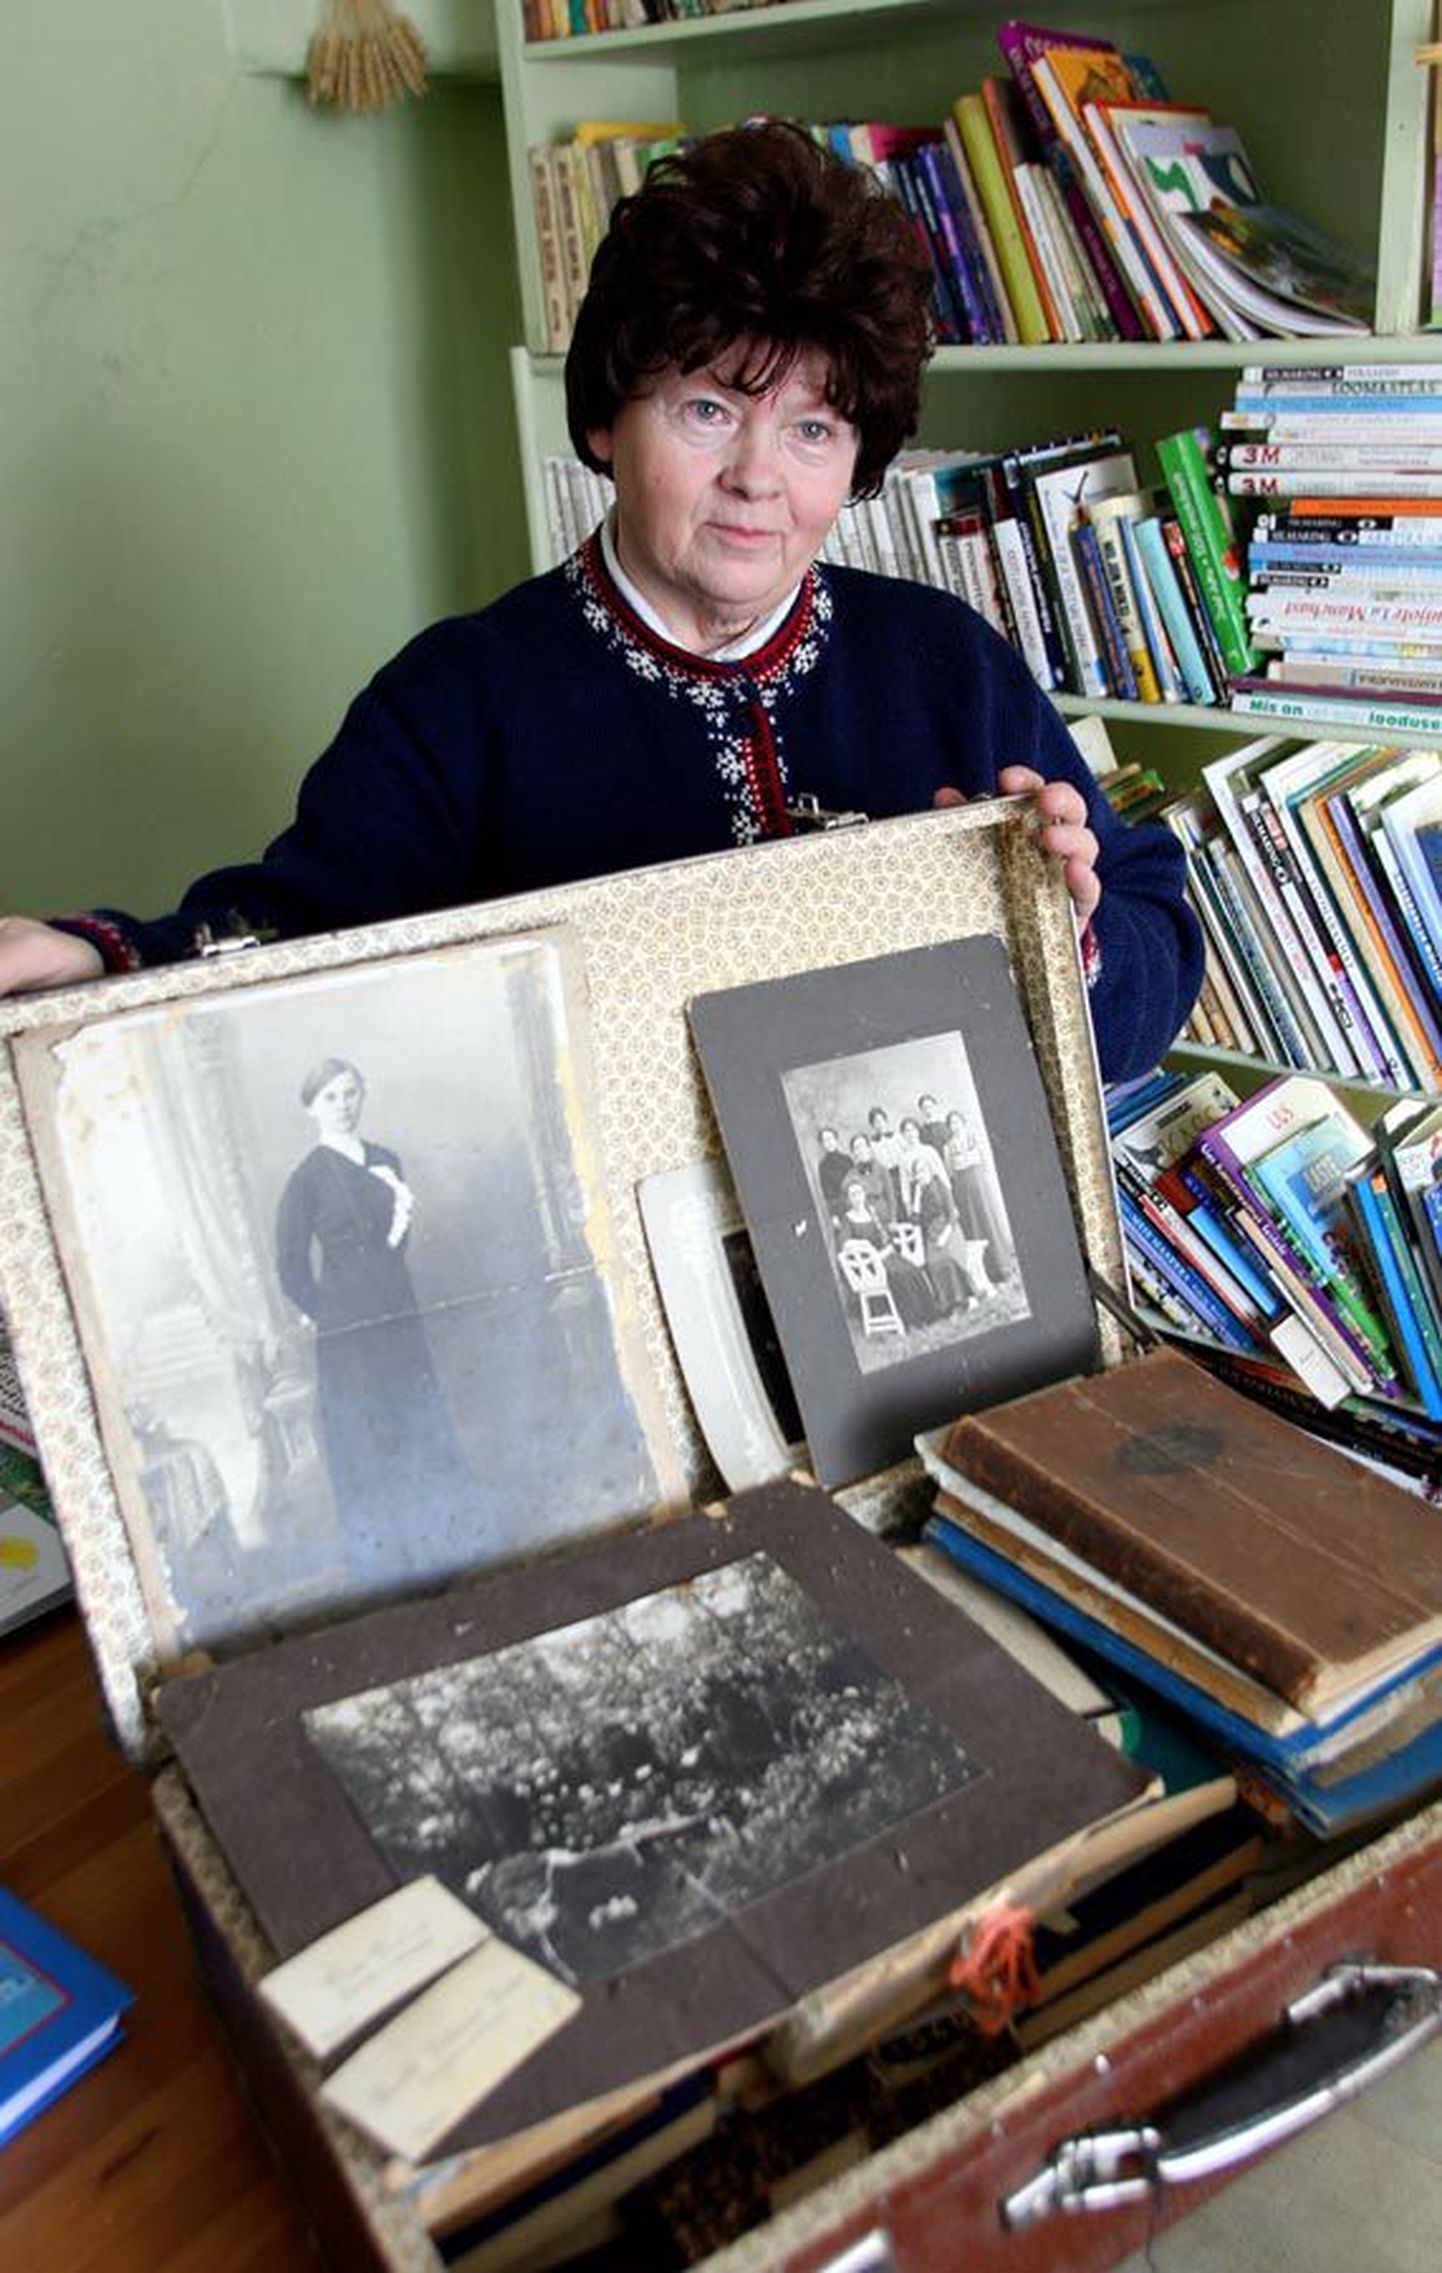 Vanas kohvris hoiab Olga Sööt koduloolisi materjale. Oma lugu on ka kohvril endal. Nimelt viis raamatukoguhoidja nõukogude ajal palgapäeviti kolhoosi kontori juurde raamatuid, et töötasu järele tulevatel inimestel oleks hõlbus neid laenata.